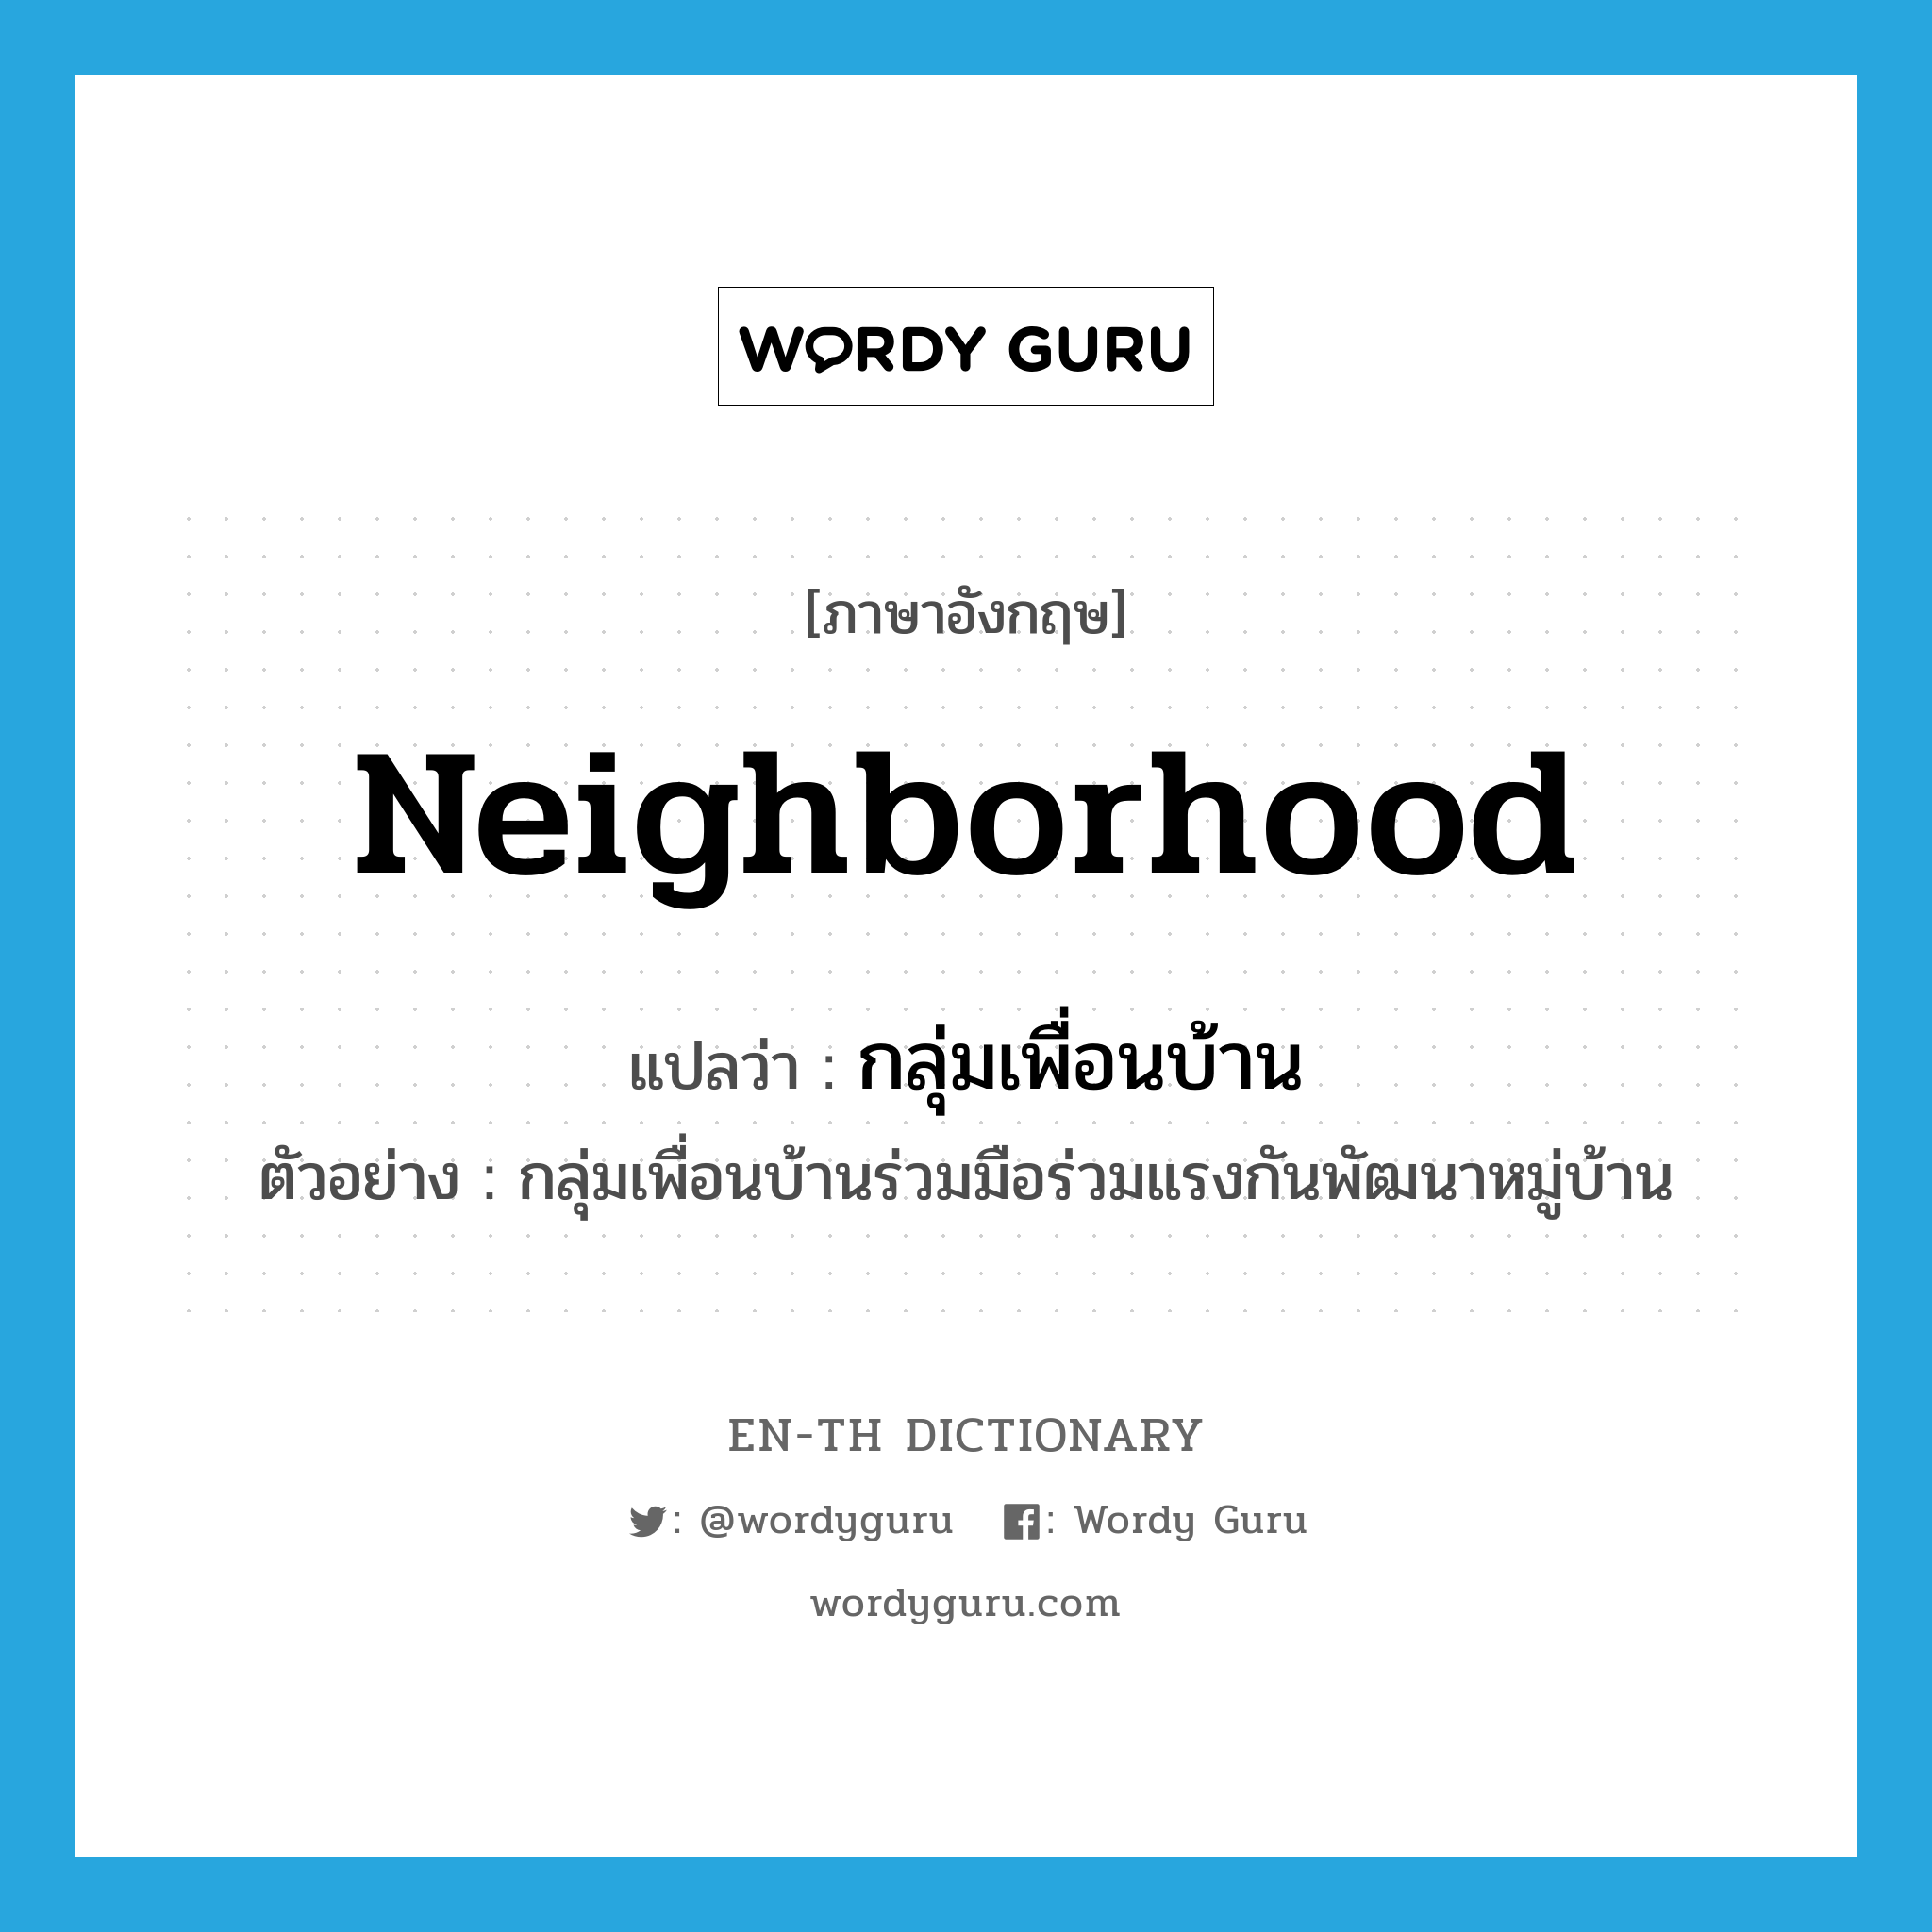 กลุ่มเพื่อนบ้าน ภาษาอังกฤษ?, คำศัพท์ภาษาอังกฤษ กลุ่มเพื่อนบ้าน แปลว่า neighborhood ประเภท N ตัวอย่าง กลุ่มเพื่อนบ้านร่วมมือร่วมแรงกันพัฒนาหมู่บ้าน หมวด N